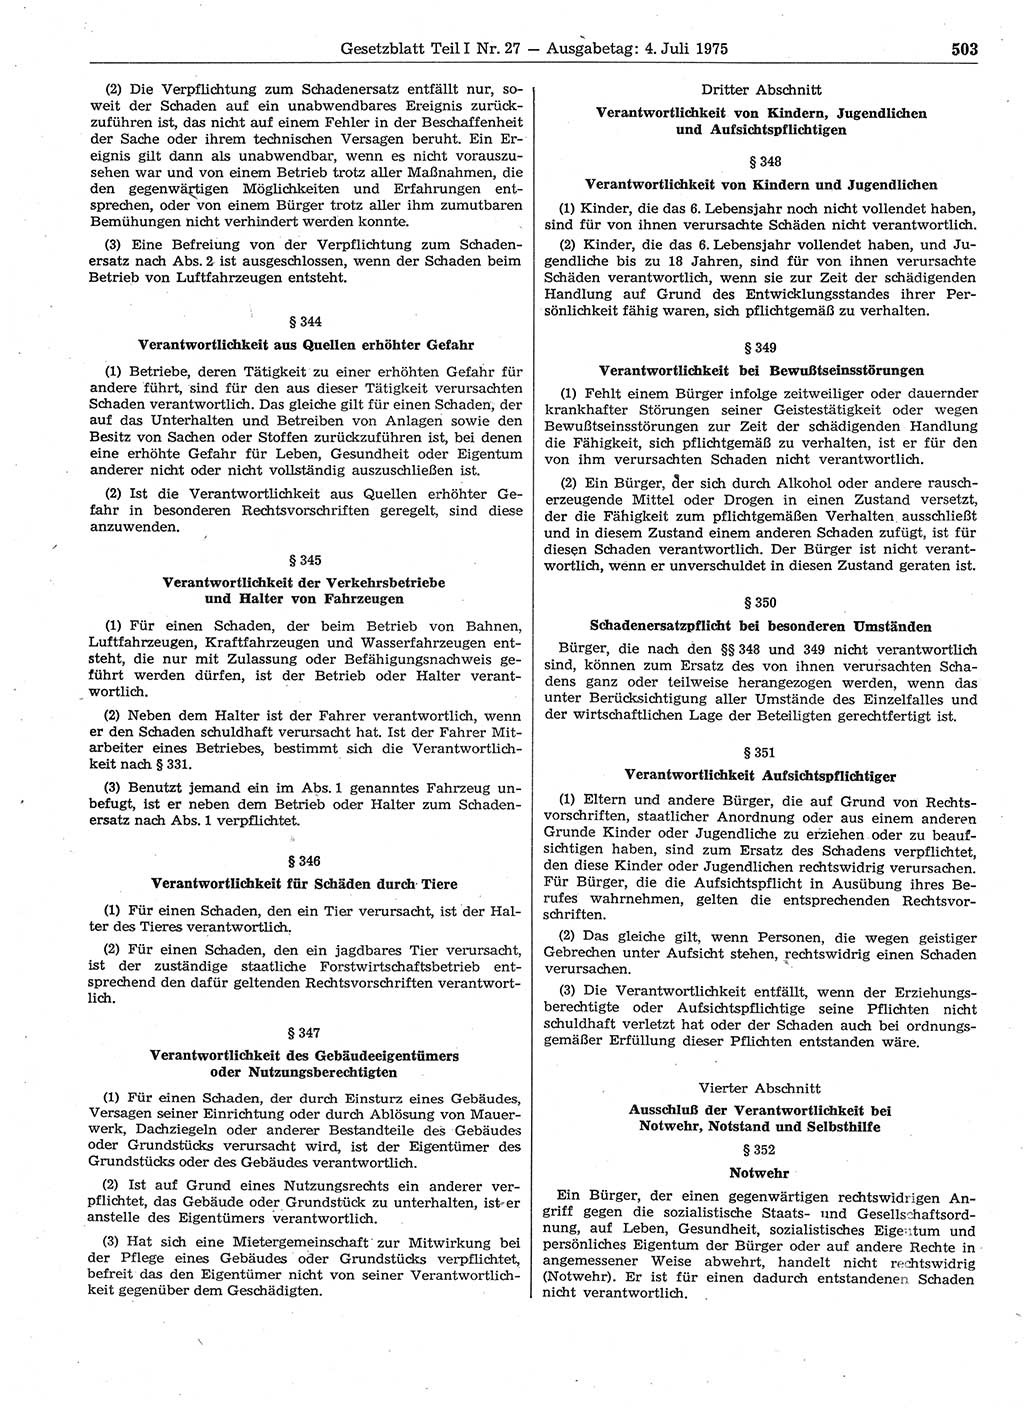 Gesetzblatt (GBl.) der Deutschen Demokratischen Republik (DDR) Teil Ⅰ 1975, Seite 503 (GBl. DDR Ⅰ 1975, S. 503)